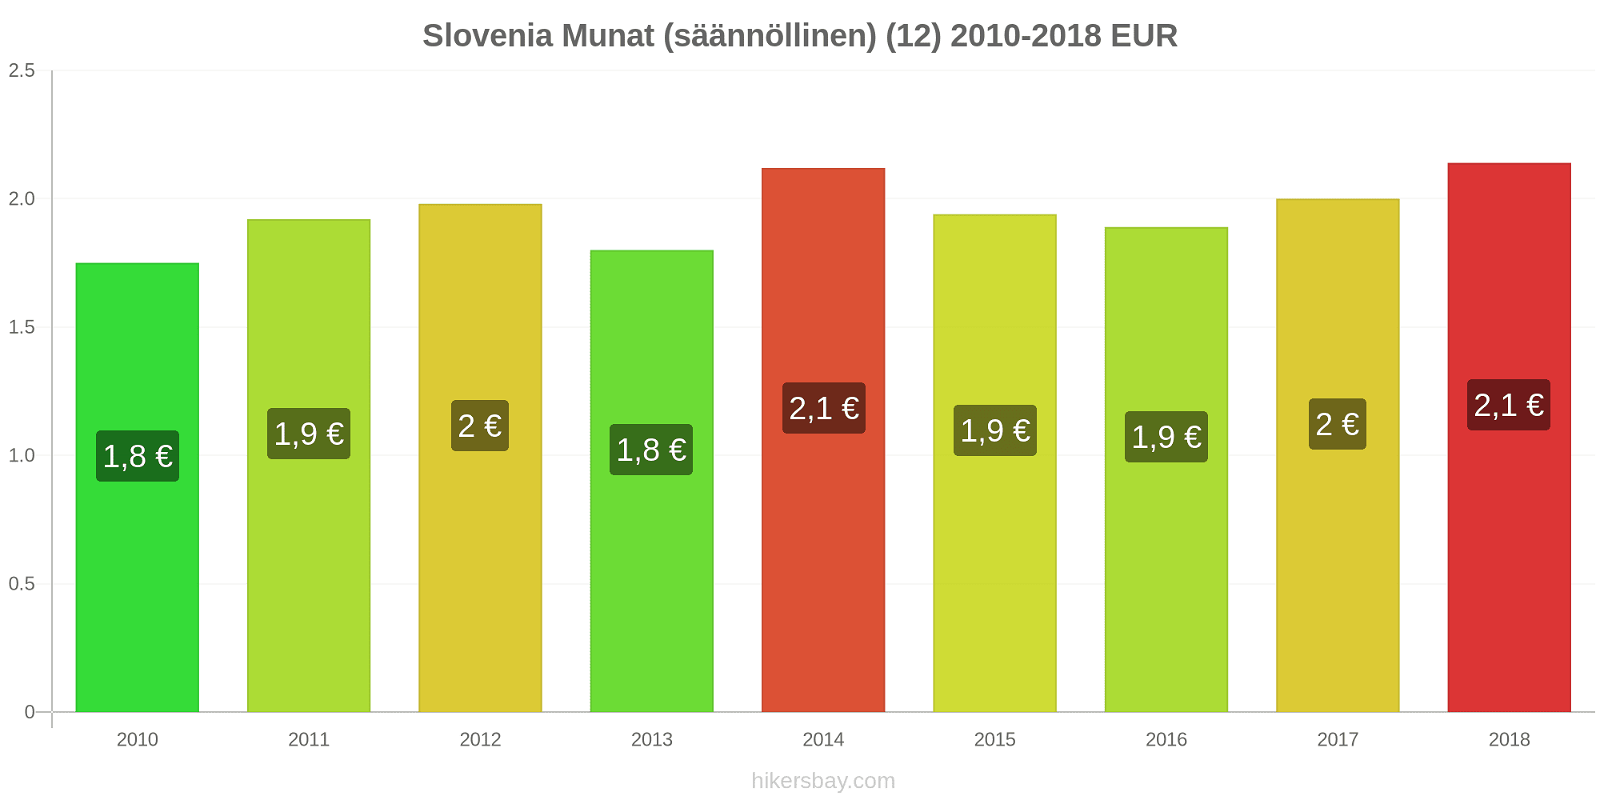 Slovenia hintojen muutokset Munat (säännöllinen) (12) hikersbay.com